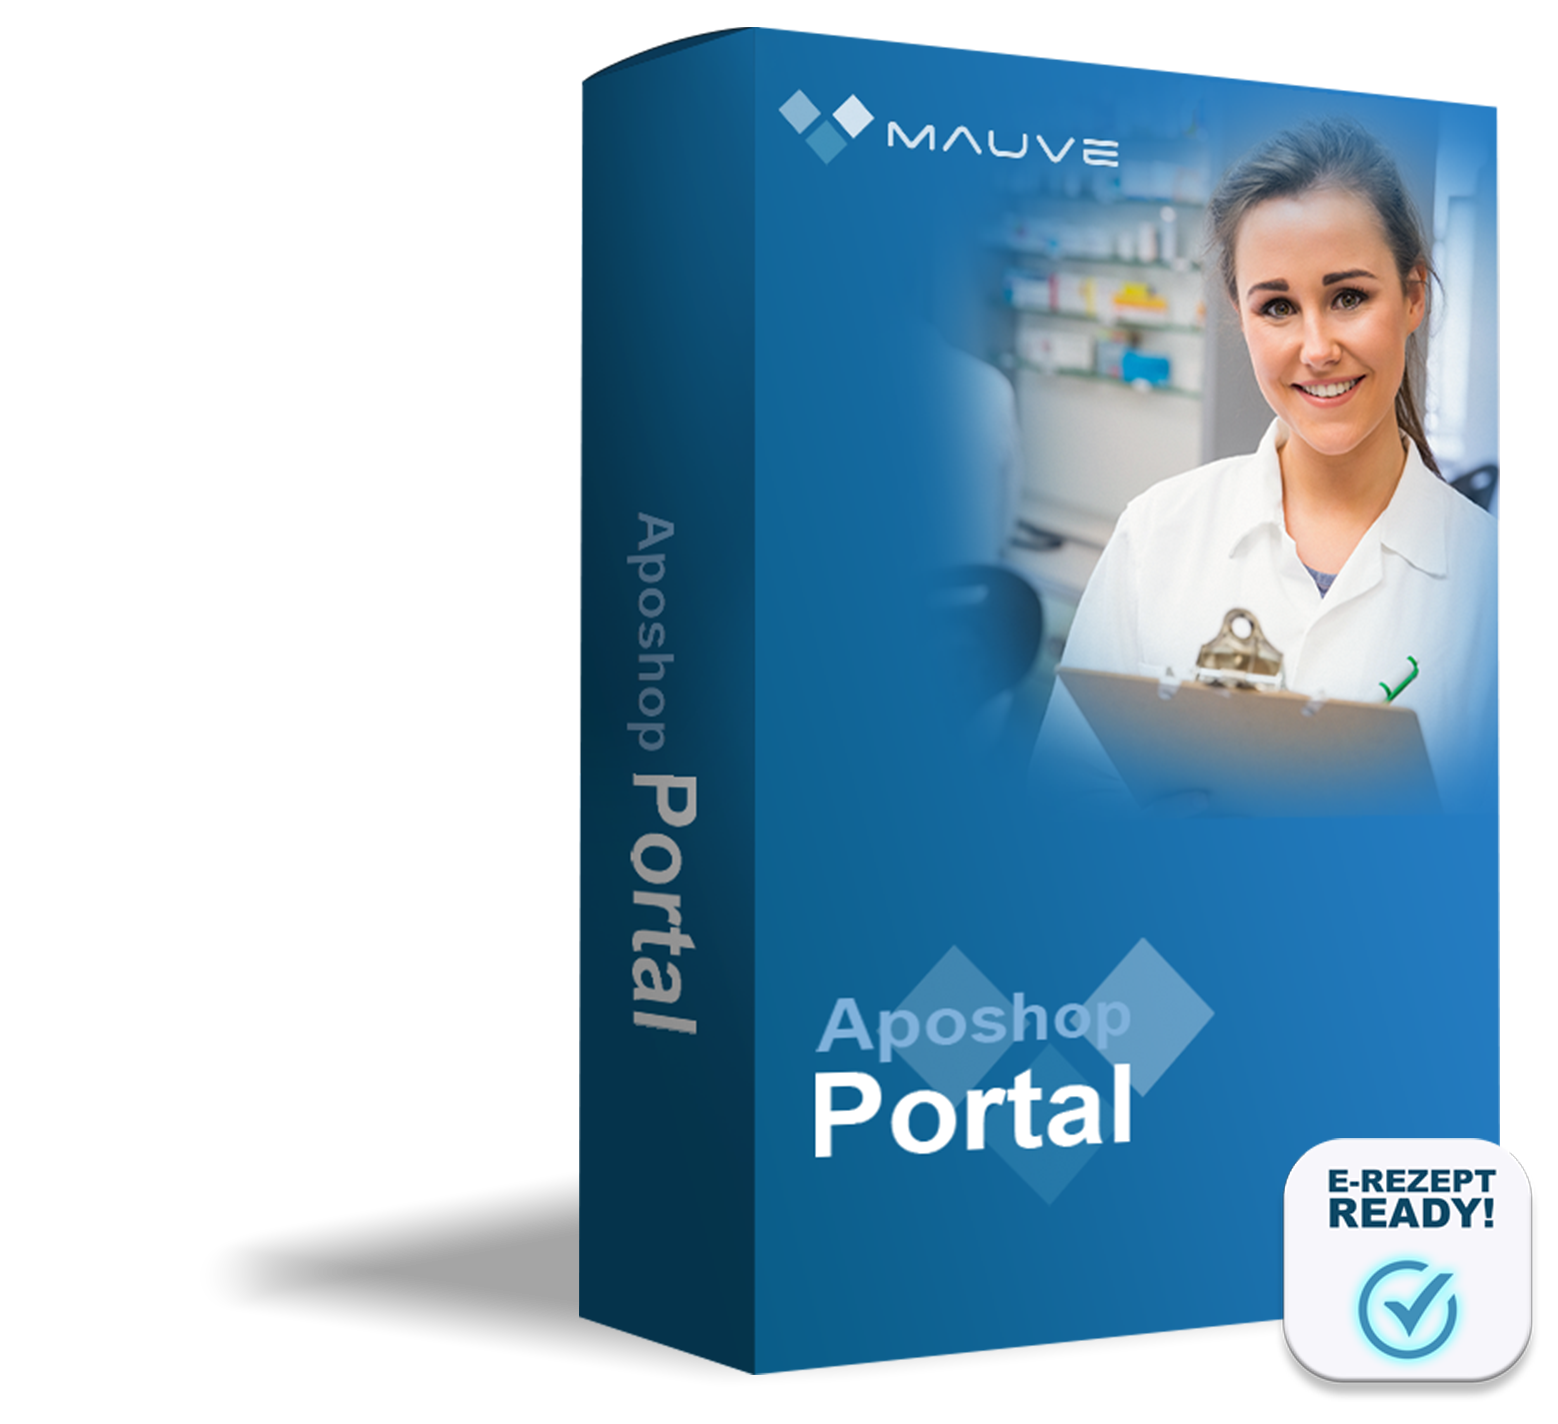 Portal - eine individuelle Apotheken-Plattform für mehrere Apotheken